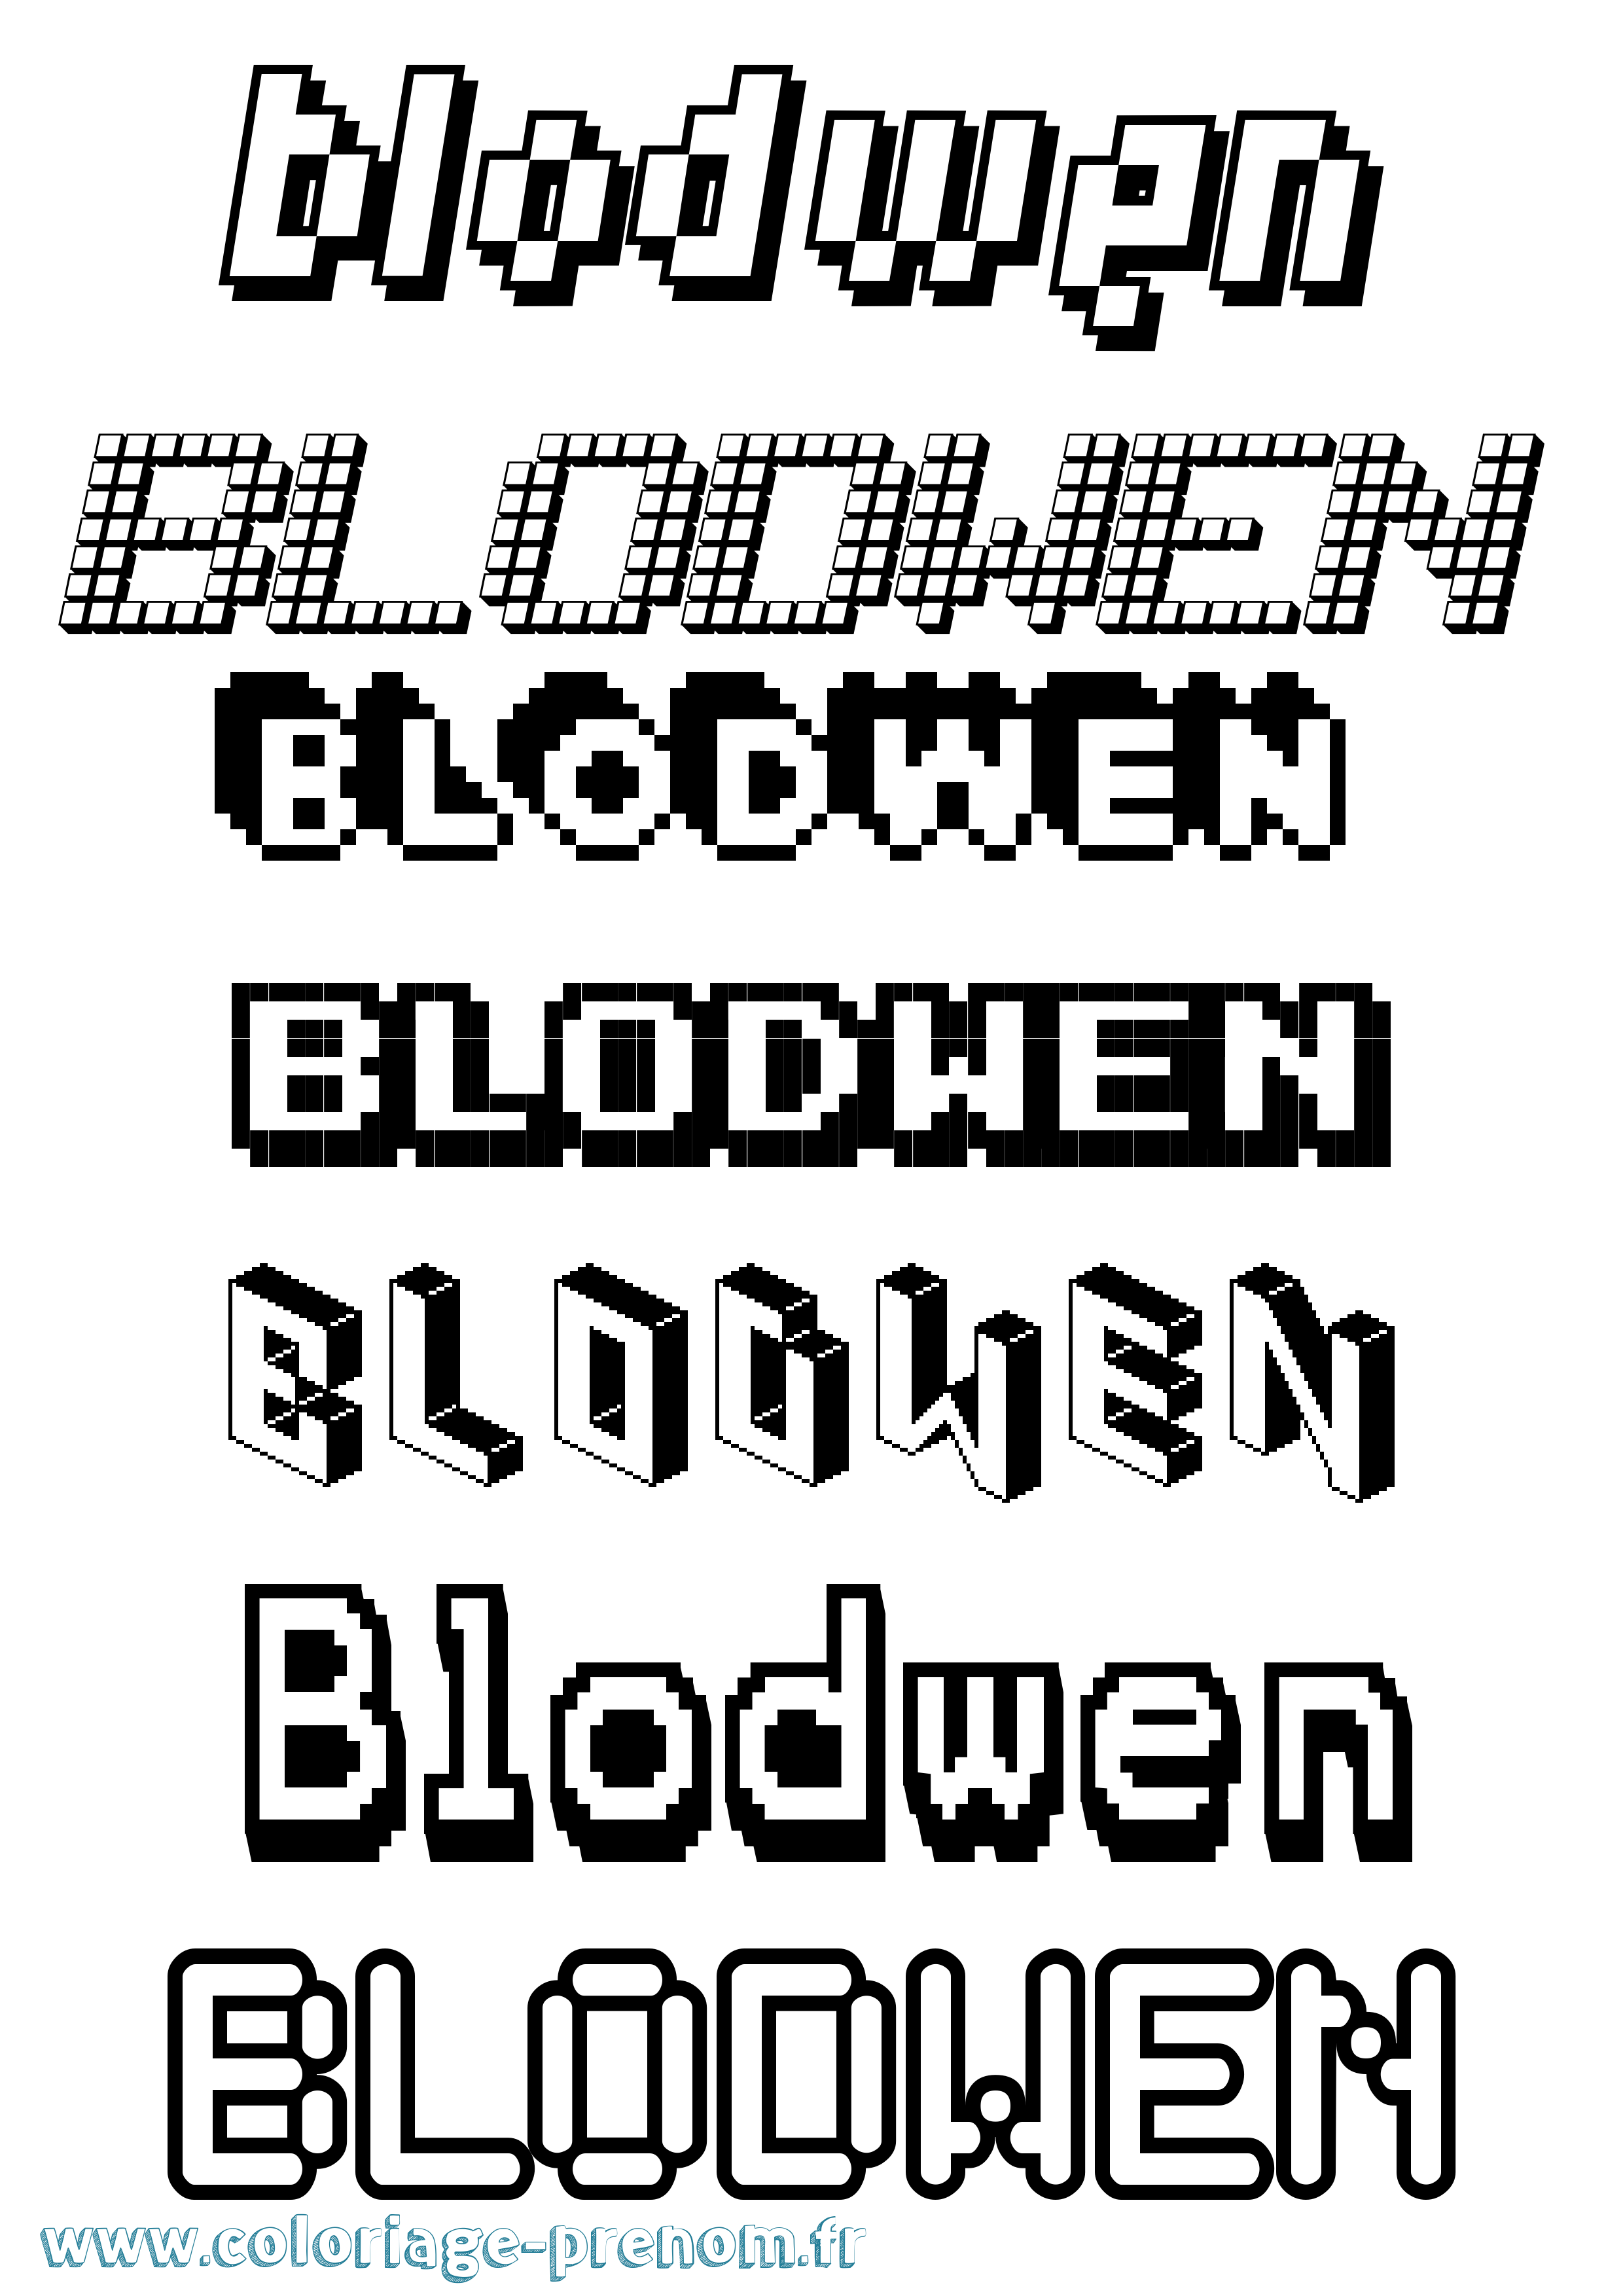 Coloriage prénom Blodwen Pixel